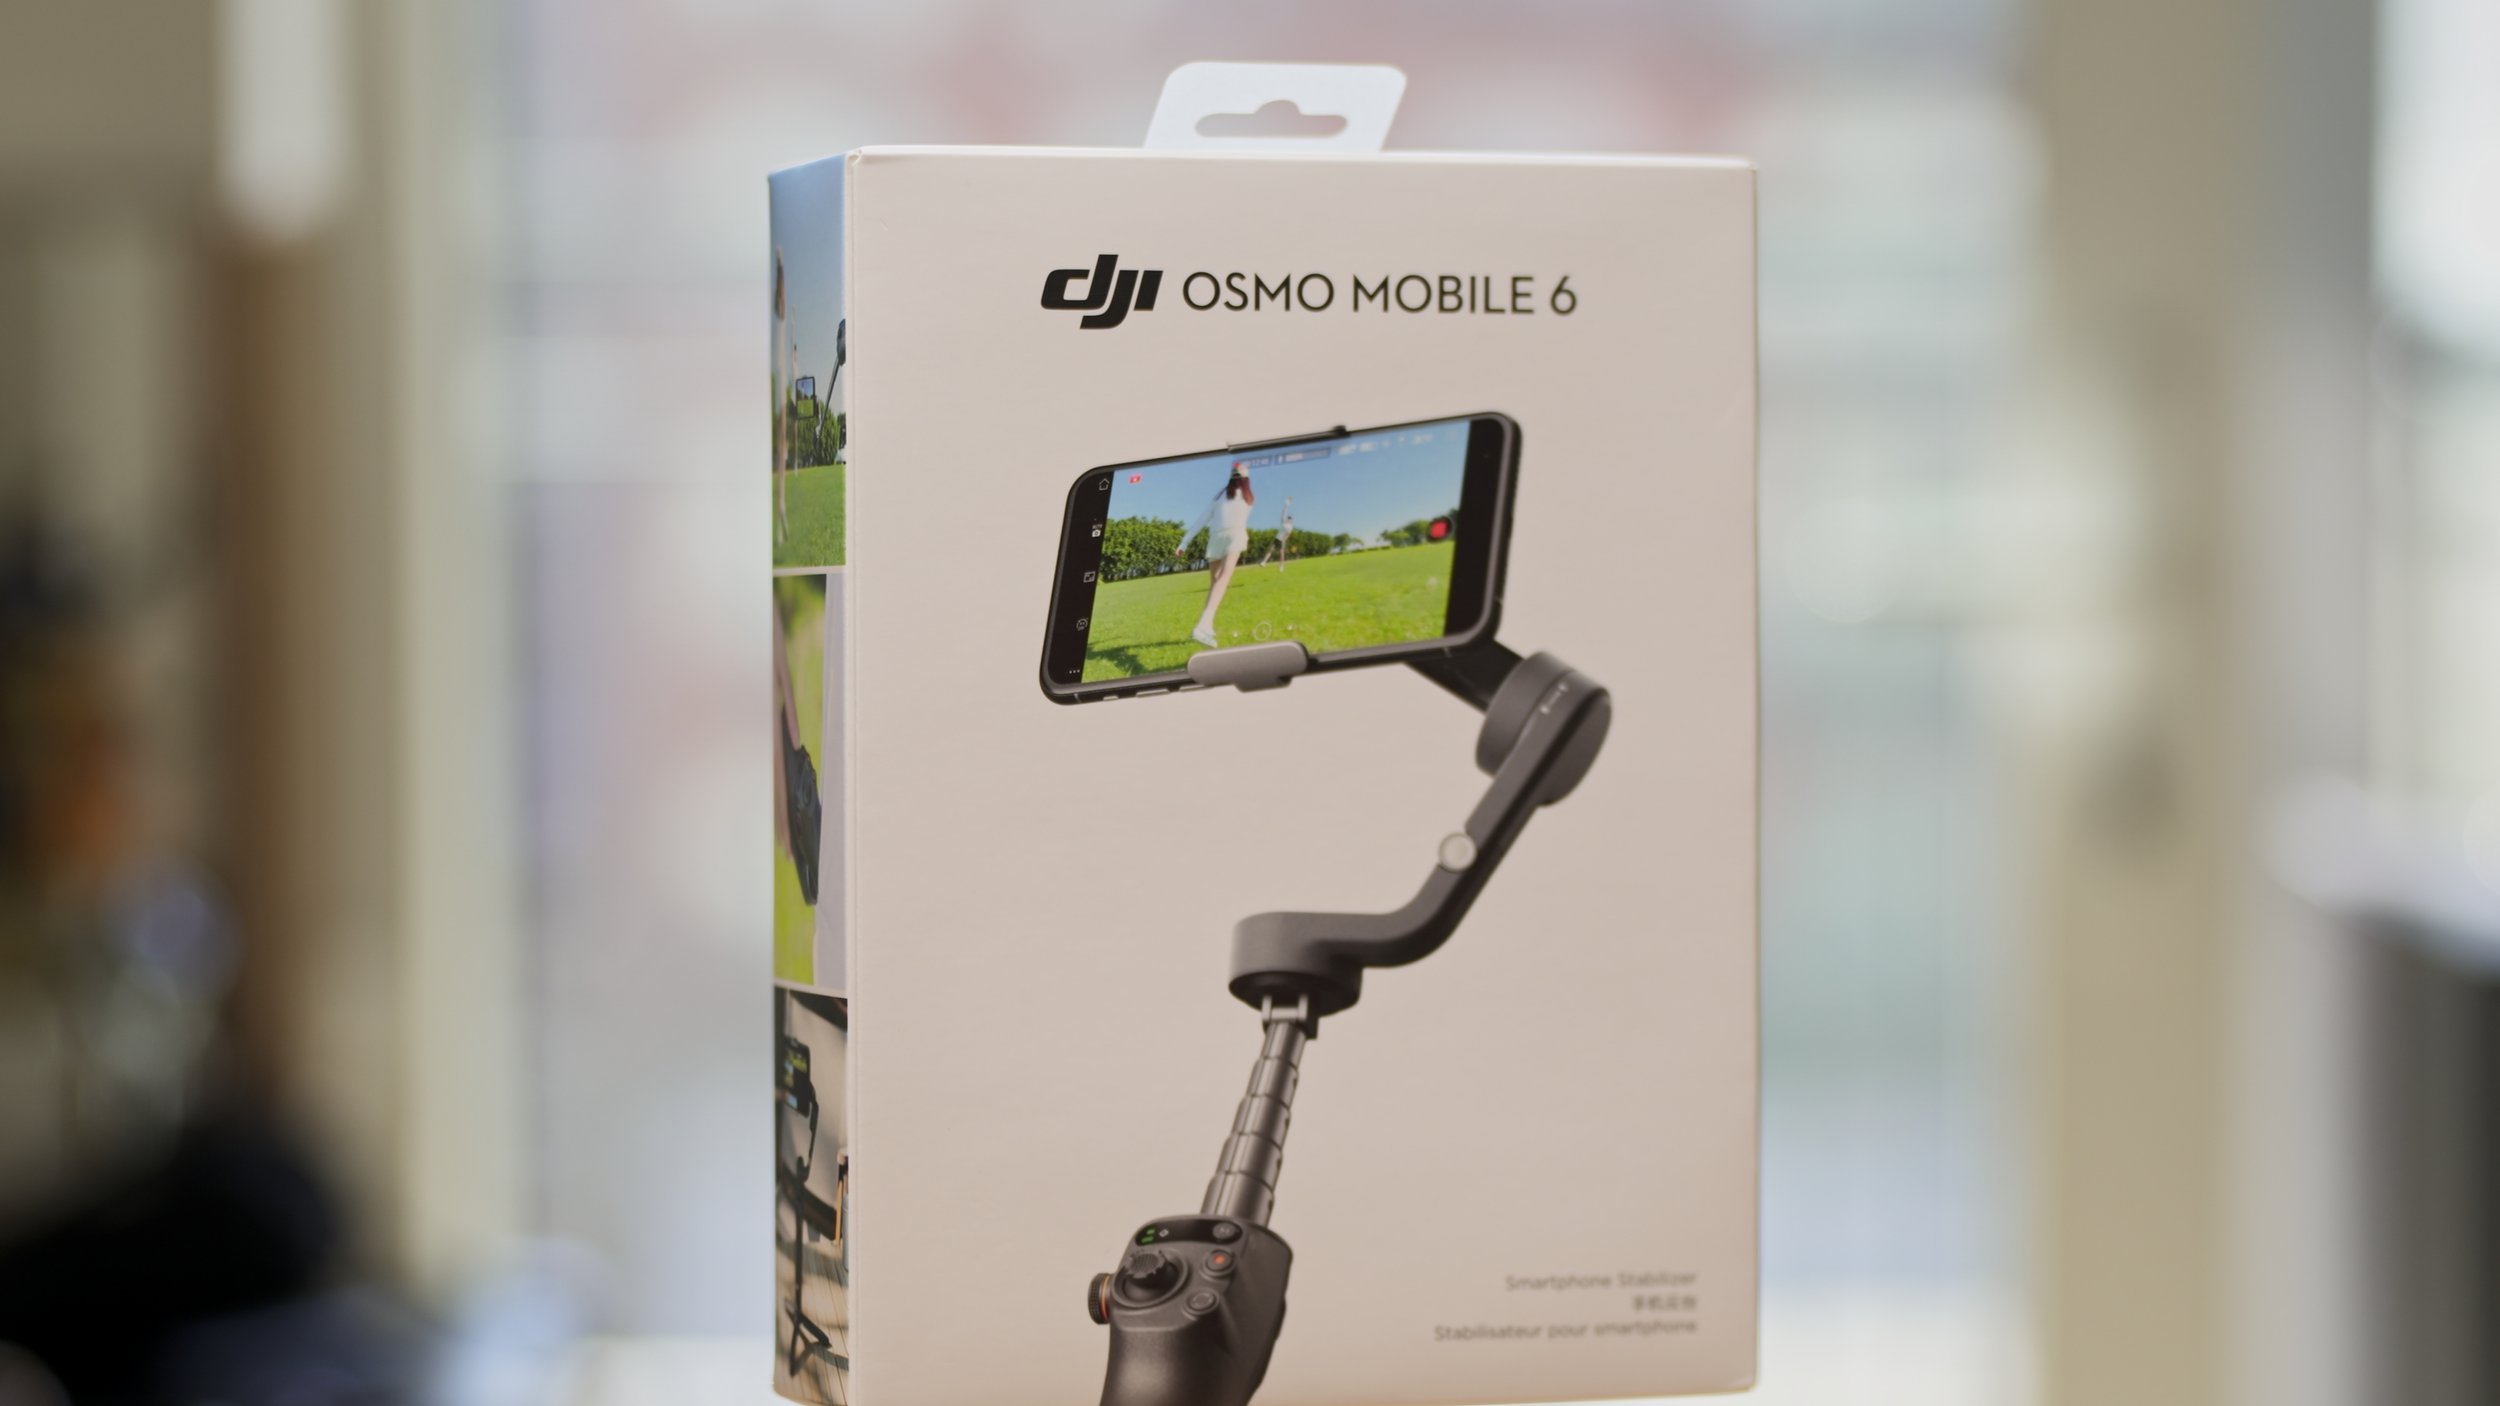 DJI Osmo Mobile 6 - Box.jpg